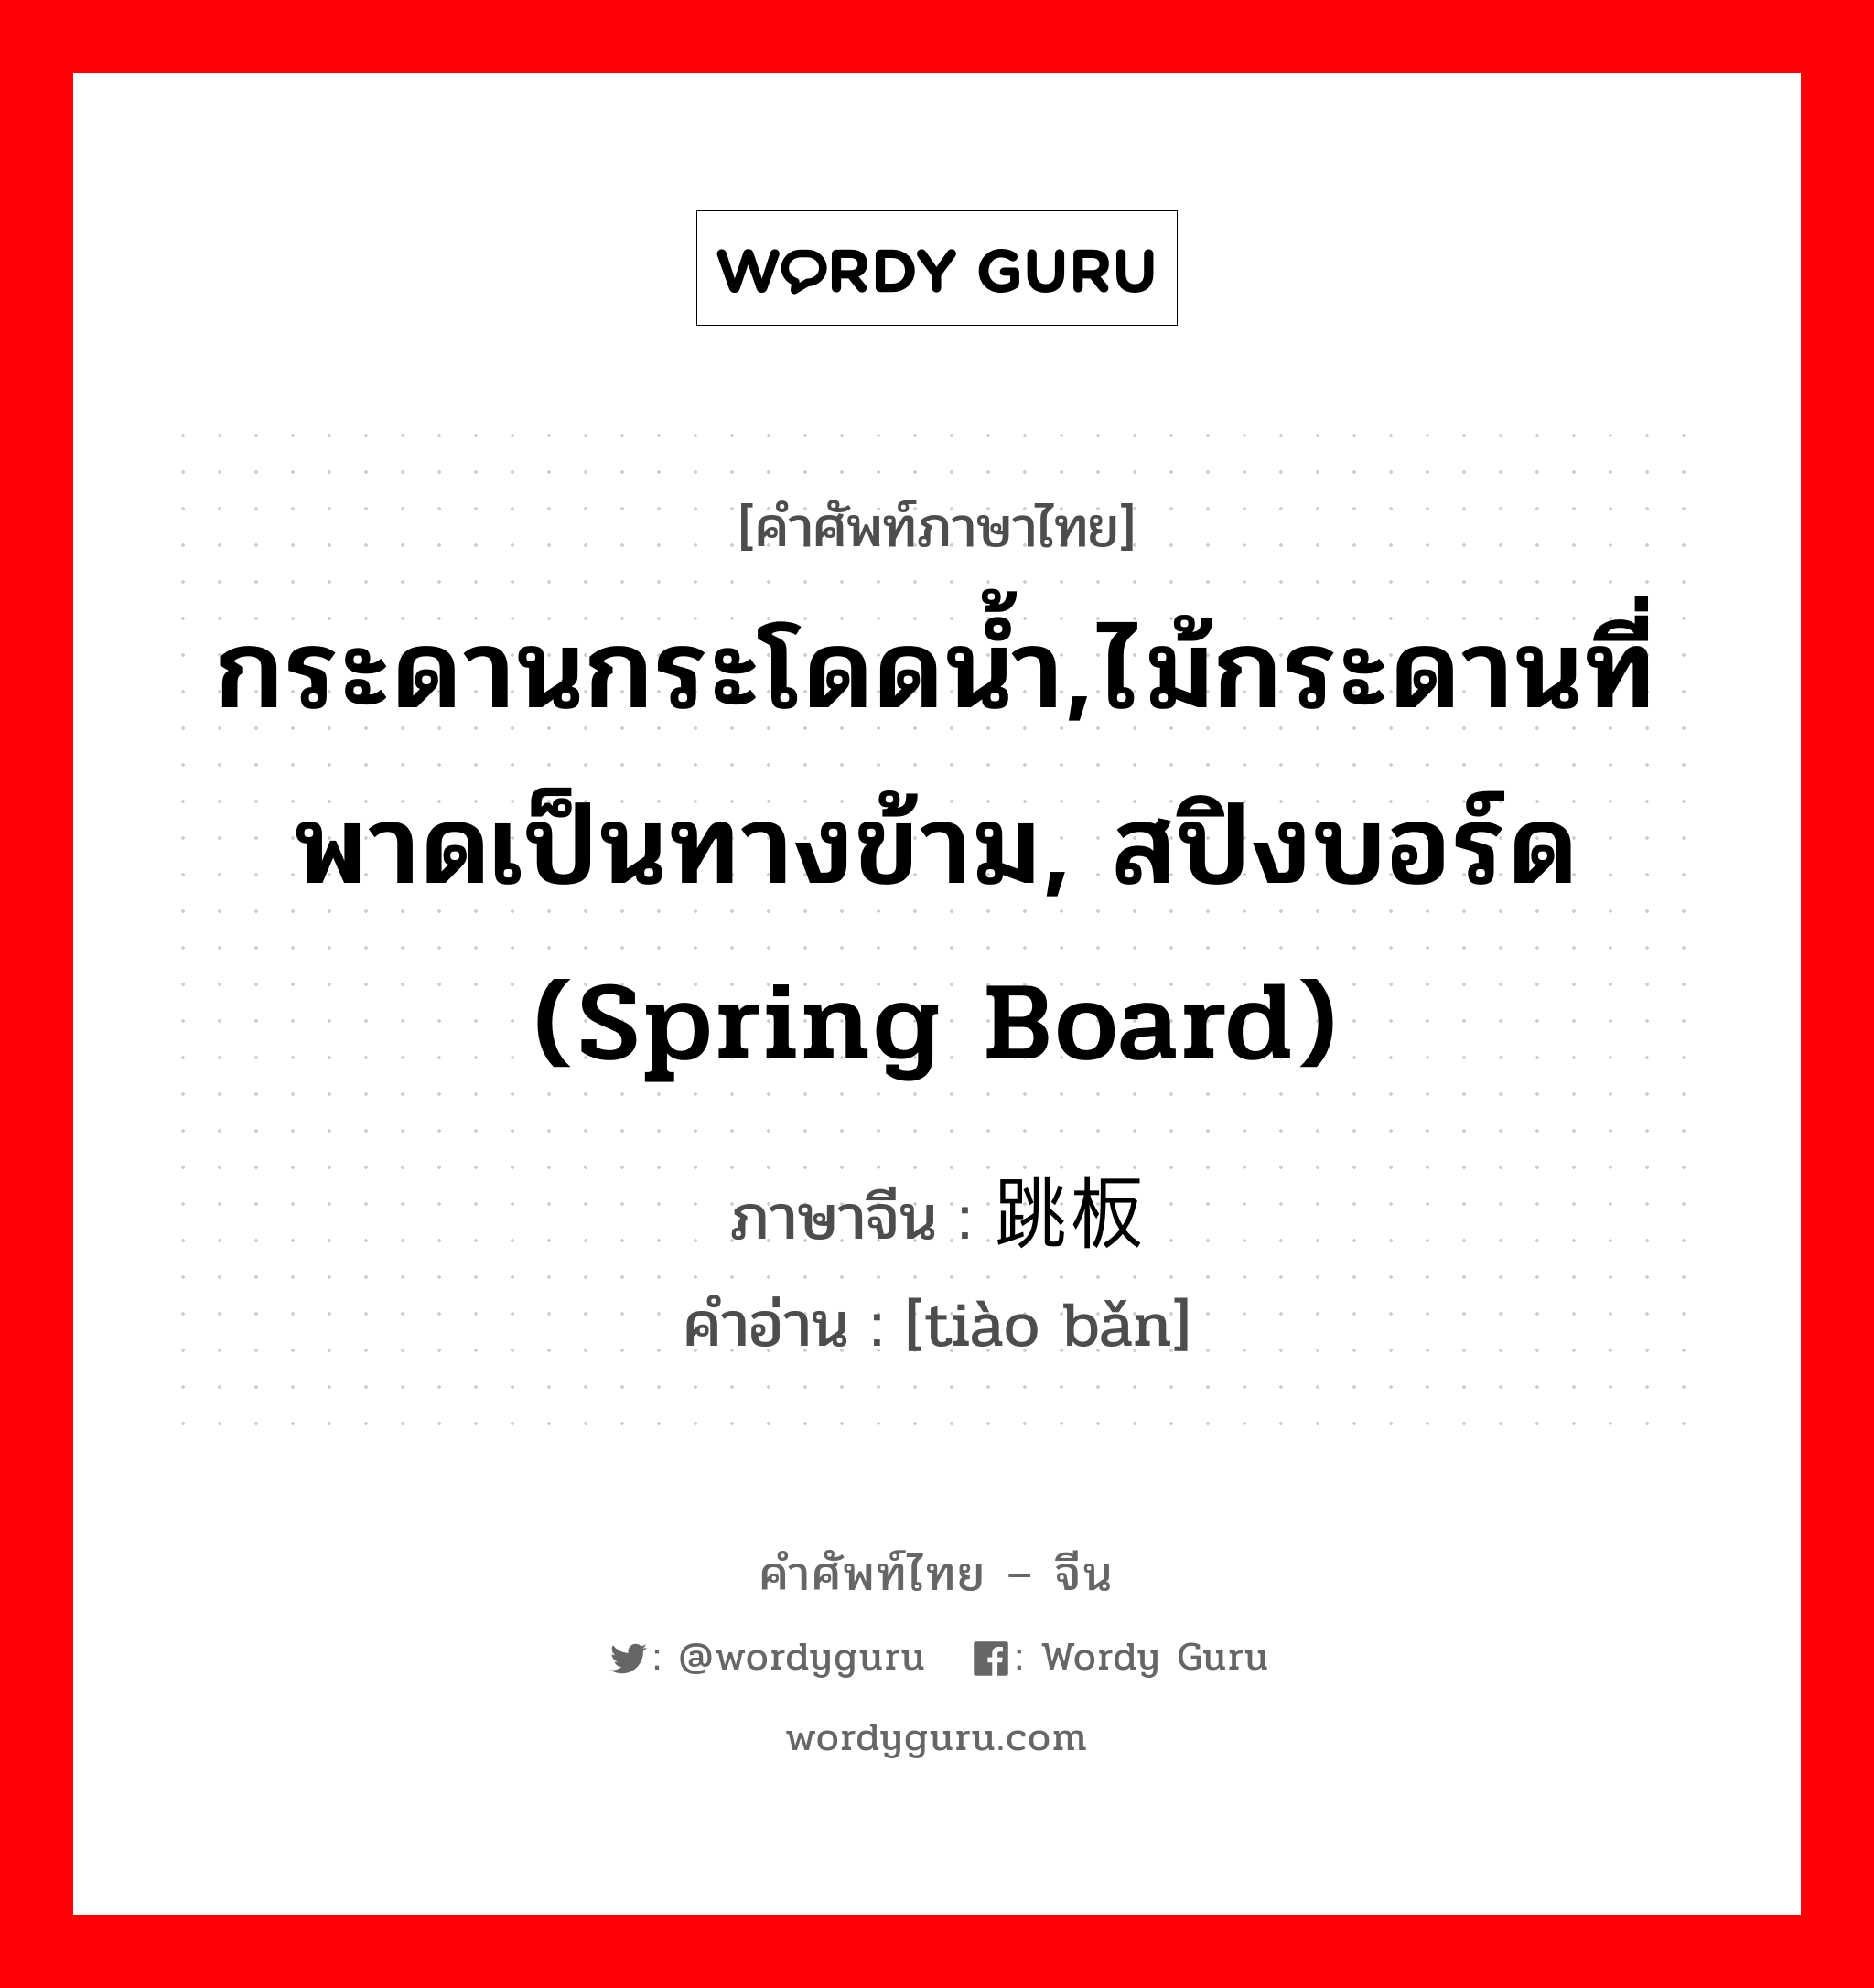 กระดานกระโดดน้ำ,ไม้กระดานที่พาดเป็นทางข้าม, สปิงบอร์ด (spring board) ภาษาจีนคืออะไร, คำศัพท์ภาษาไทย - จีน กระดานกระโดดน้ำ,ไม้กระดานที่พาดเป็นทางข้าม, สปิงบอร์ด (spring board) ภาษาจีน 跳板 คำอ่าน [tiào bǎn]